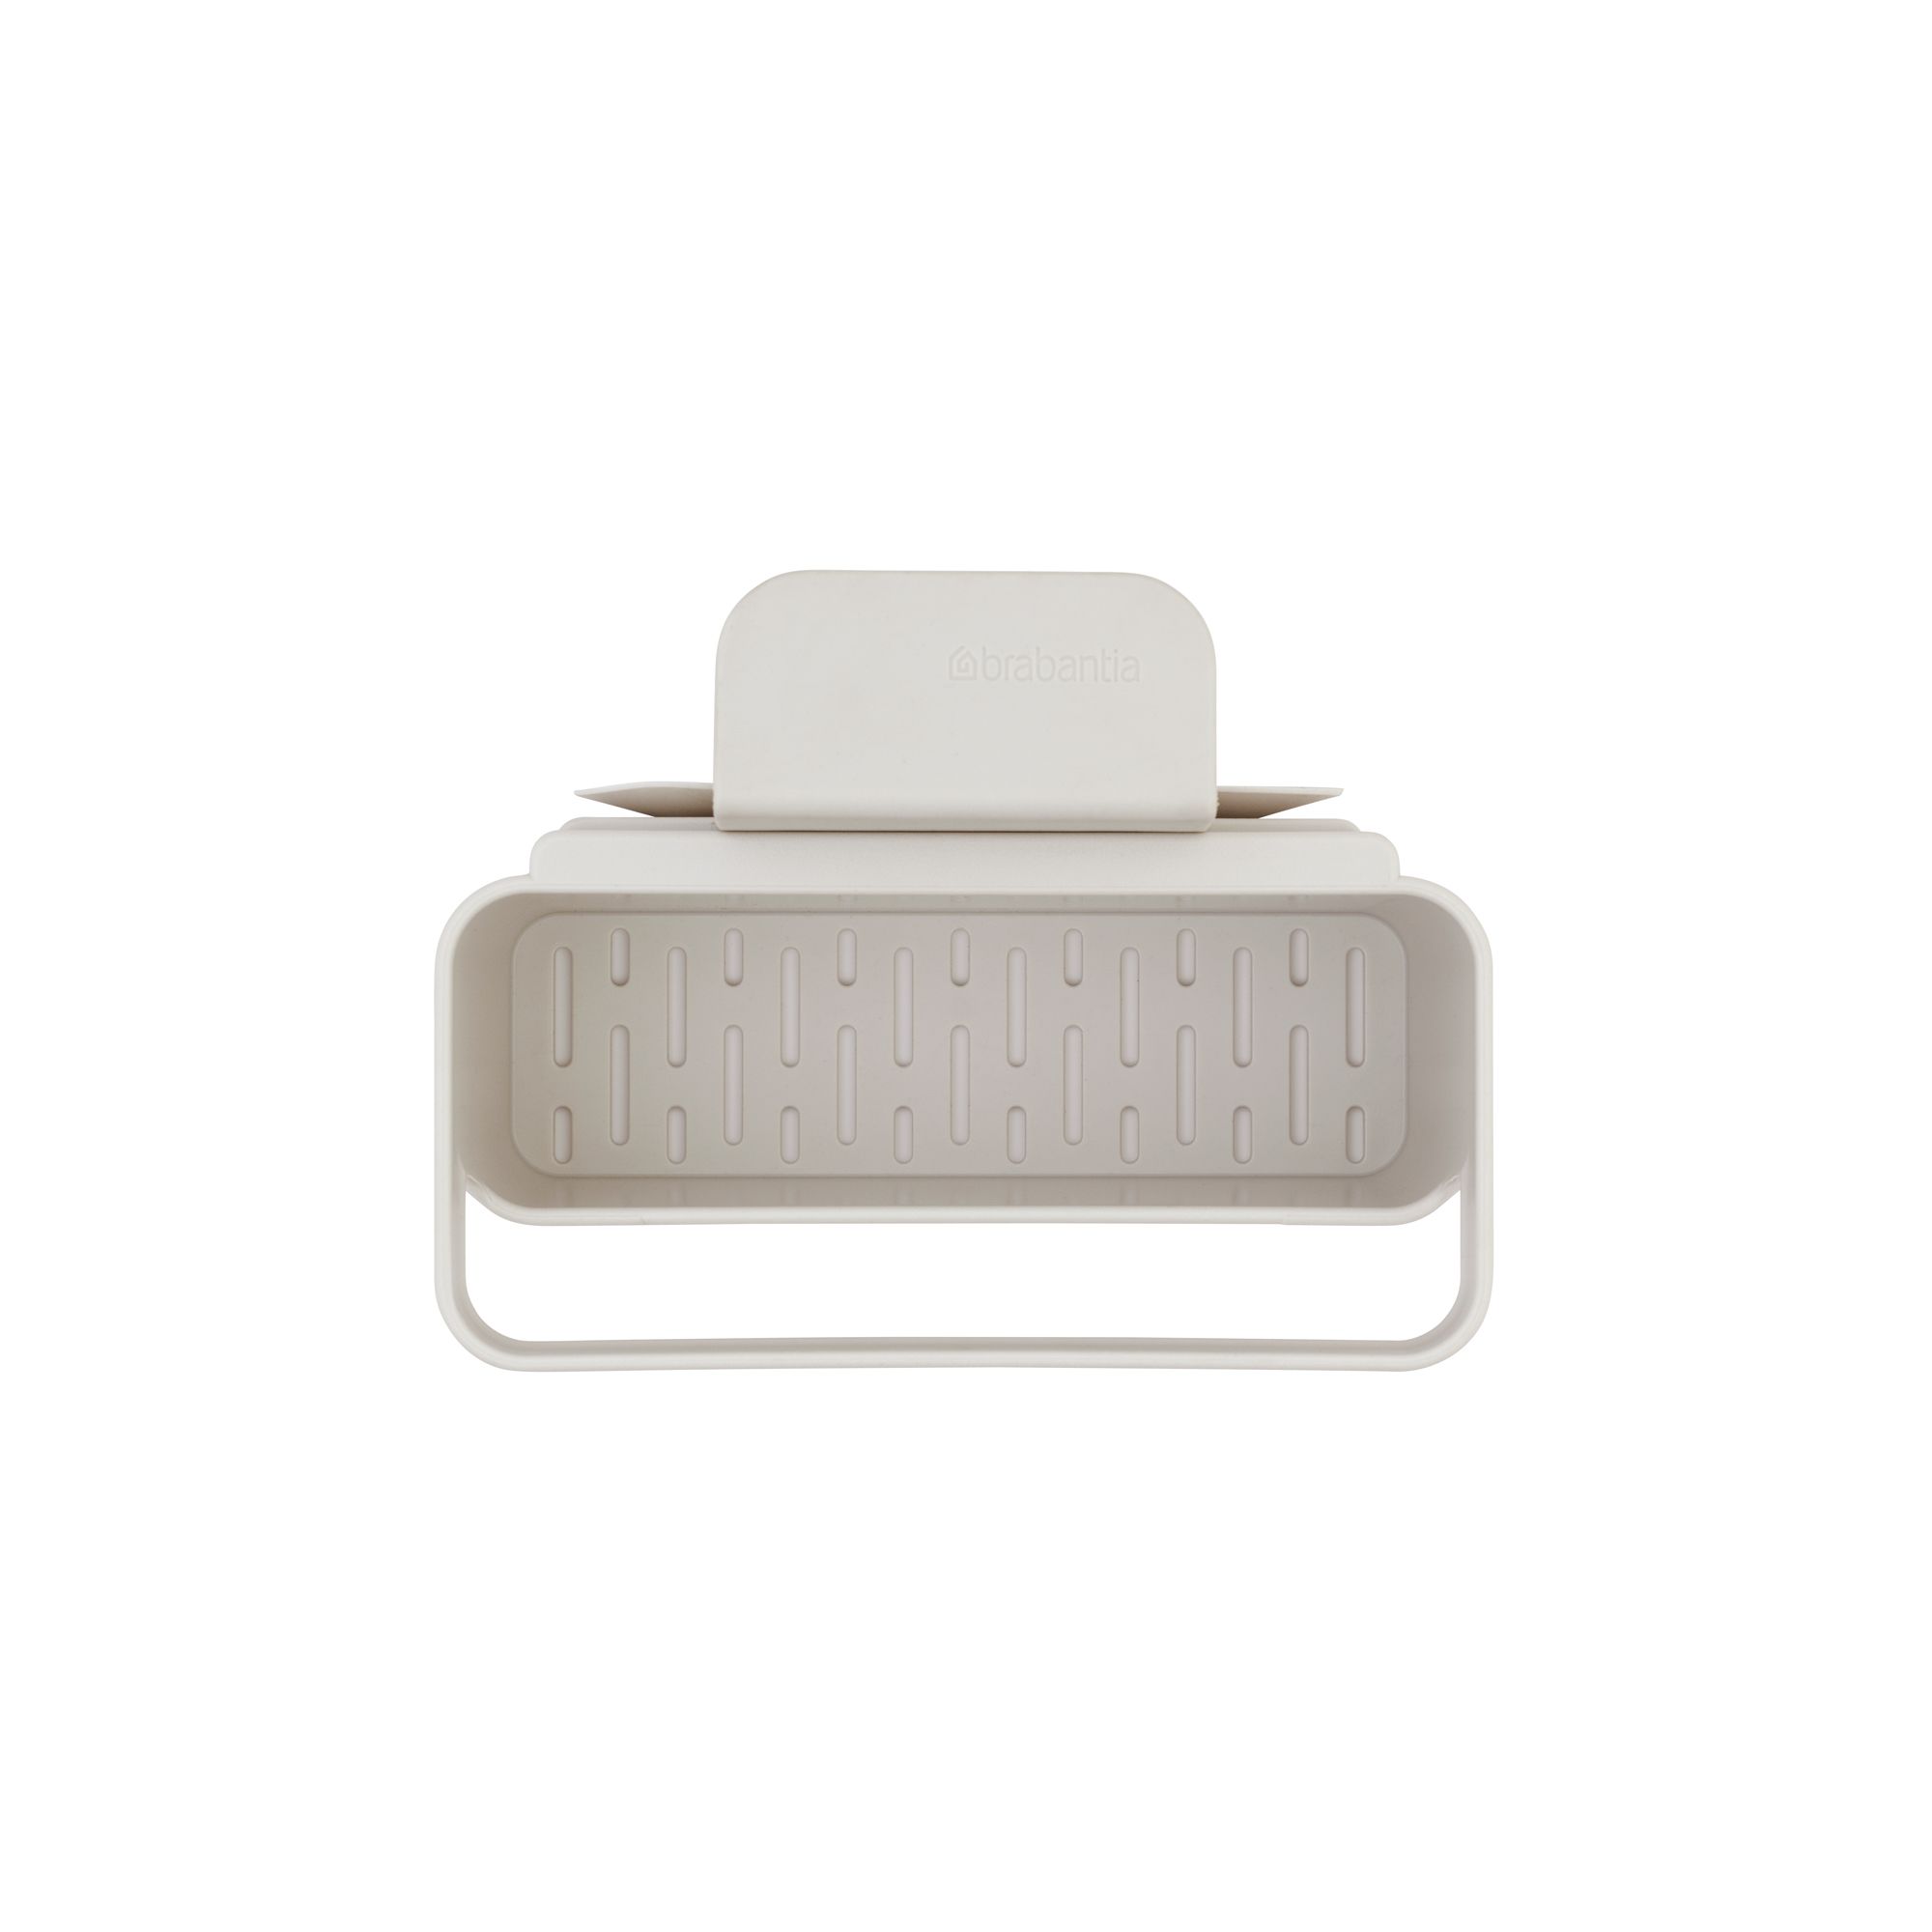 Brabantia SinkSide Light Grey Plastic Sink basket, (W)127mm